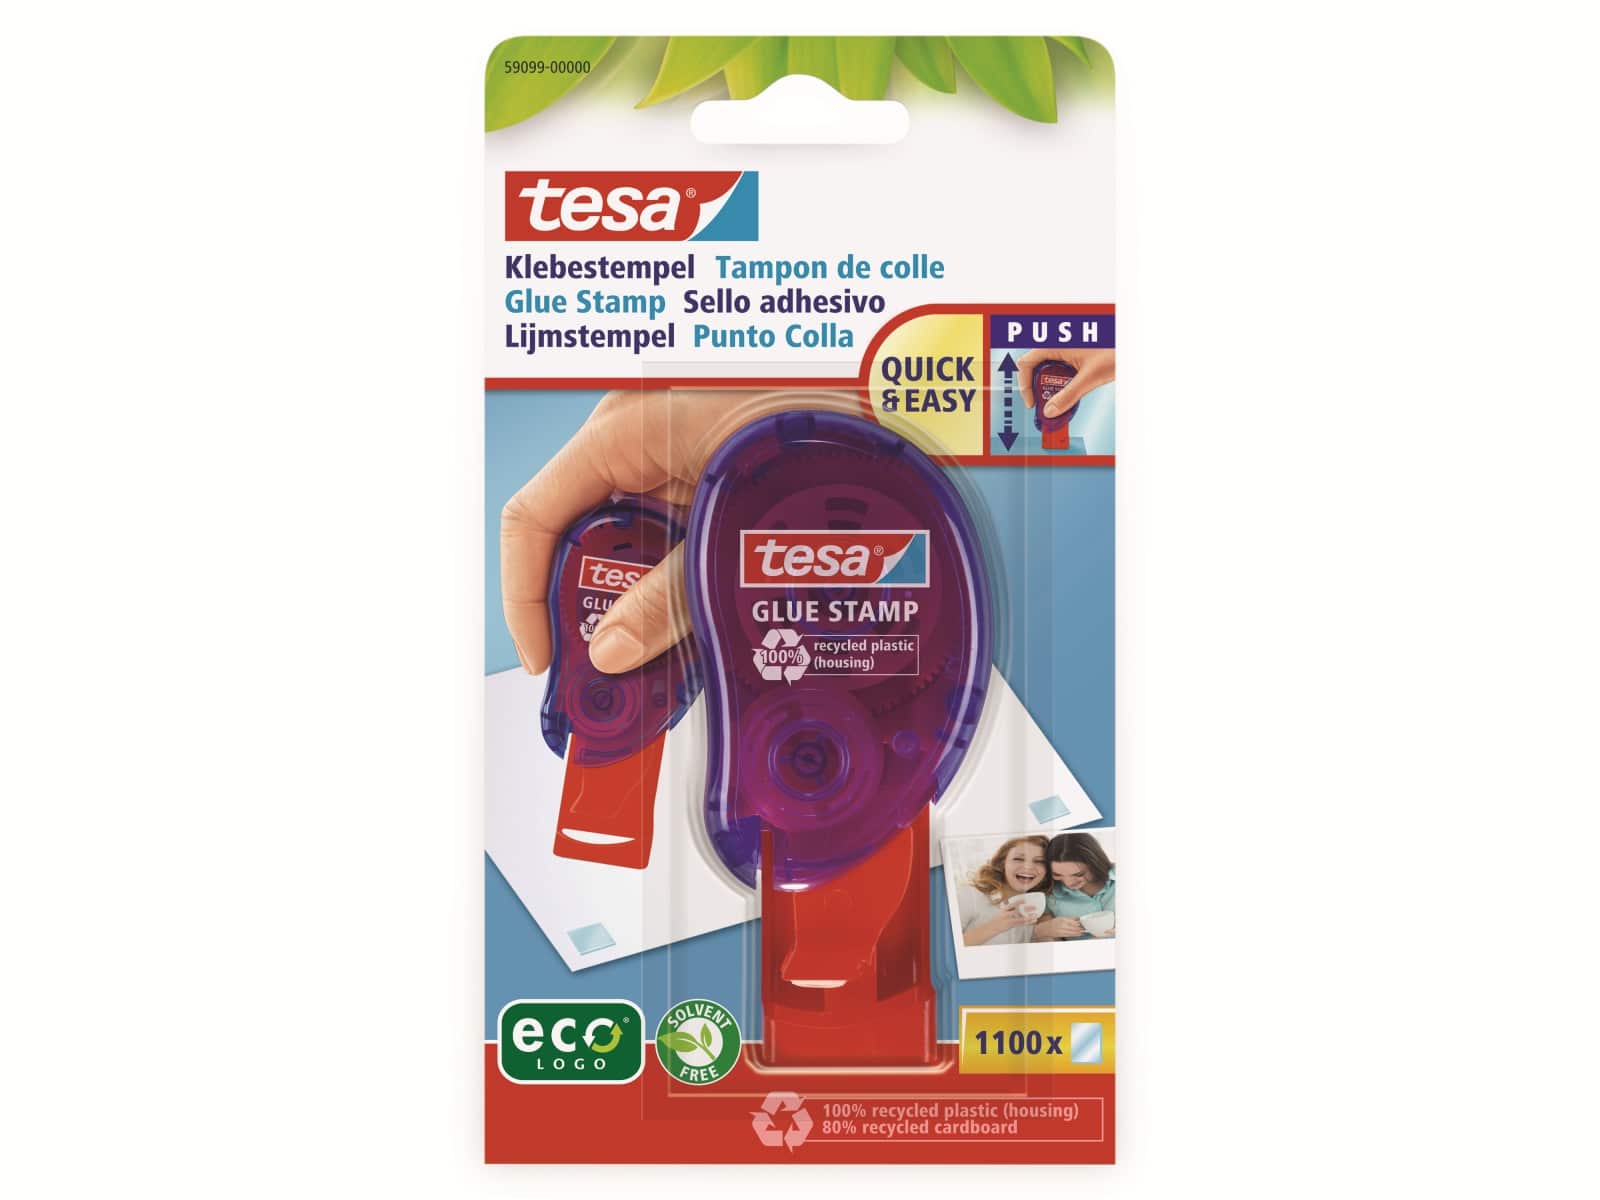 TESA ® Klebestempel permanent ecoLogo®, 59099-00000-00